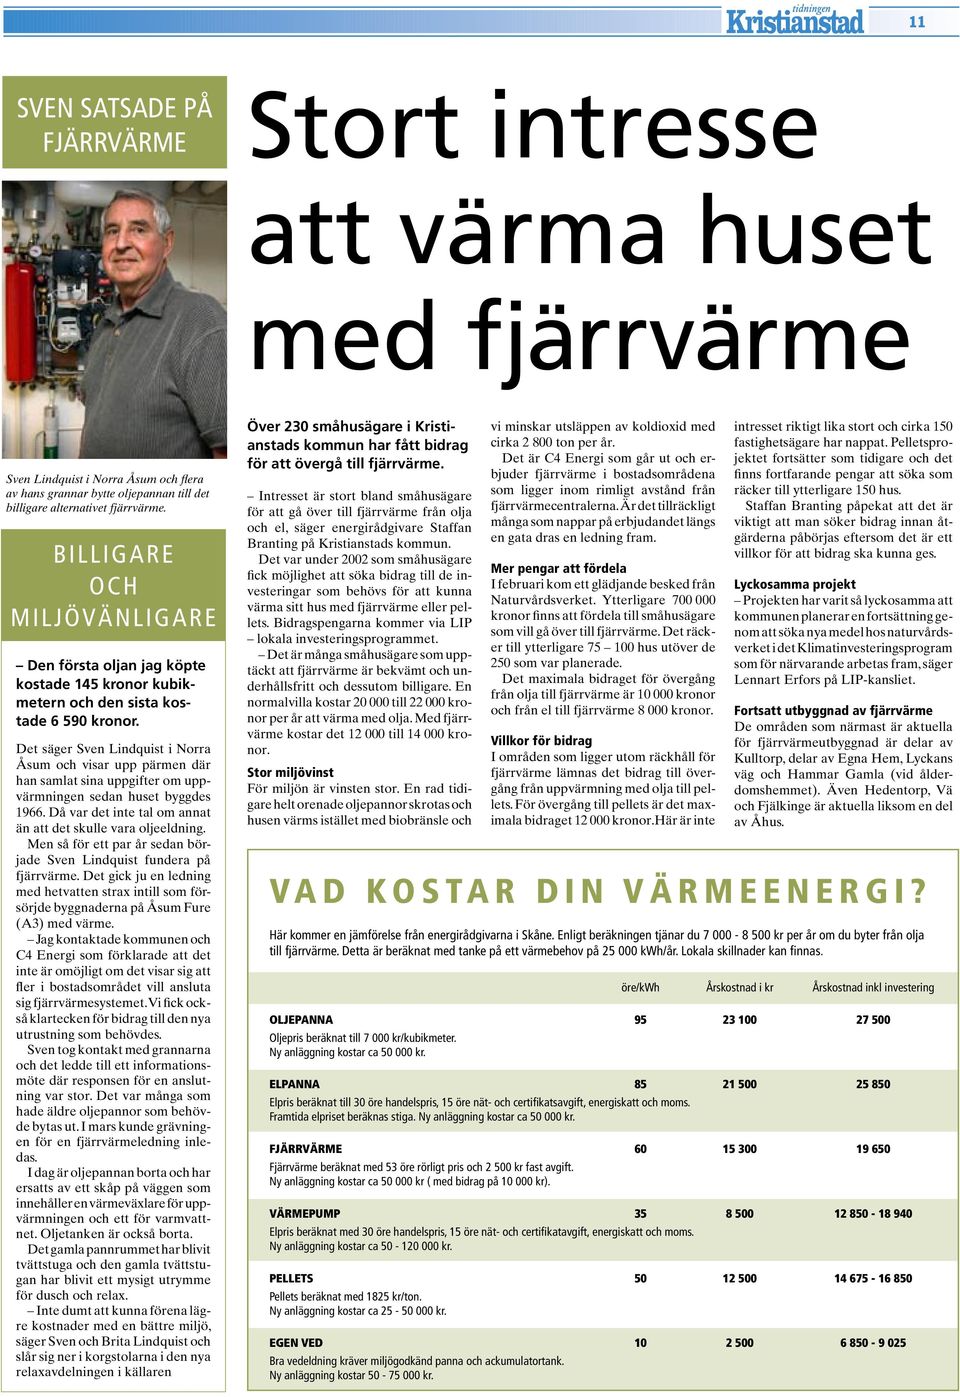 Det säger Sven Lindquist i Norra Åsum och visar upp pärmen där han samlat sina uppgifter om uppvärmningen sedan huset byggdes 1966. Då var det inte tal om annat än att det skulle vara oljeeldning.